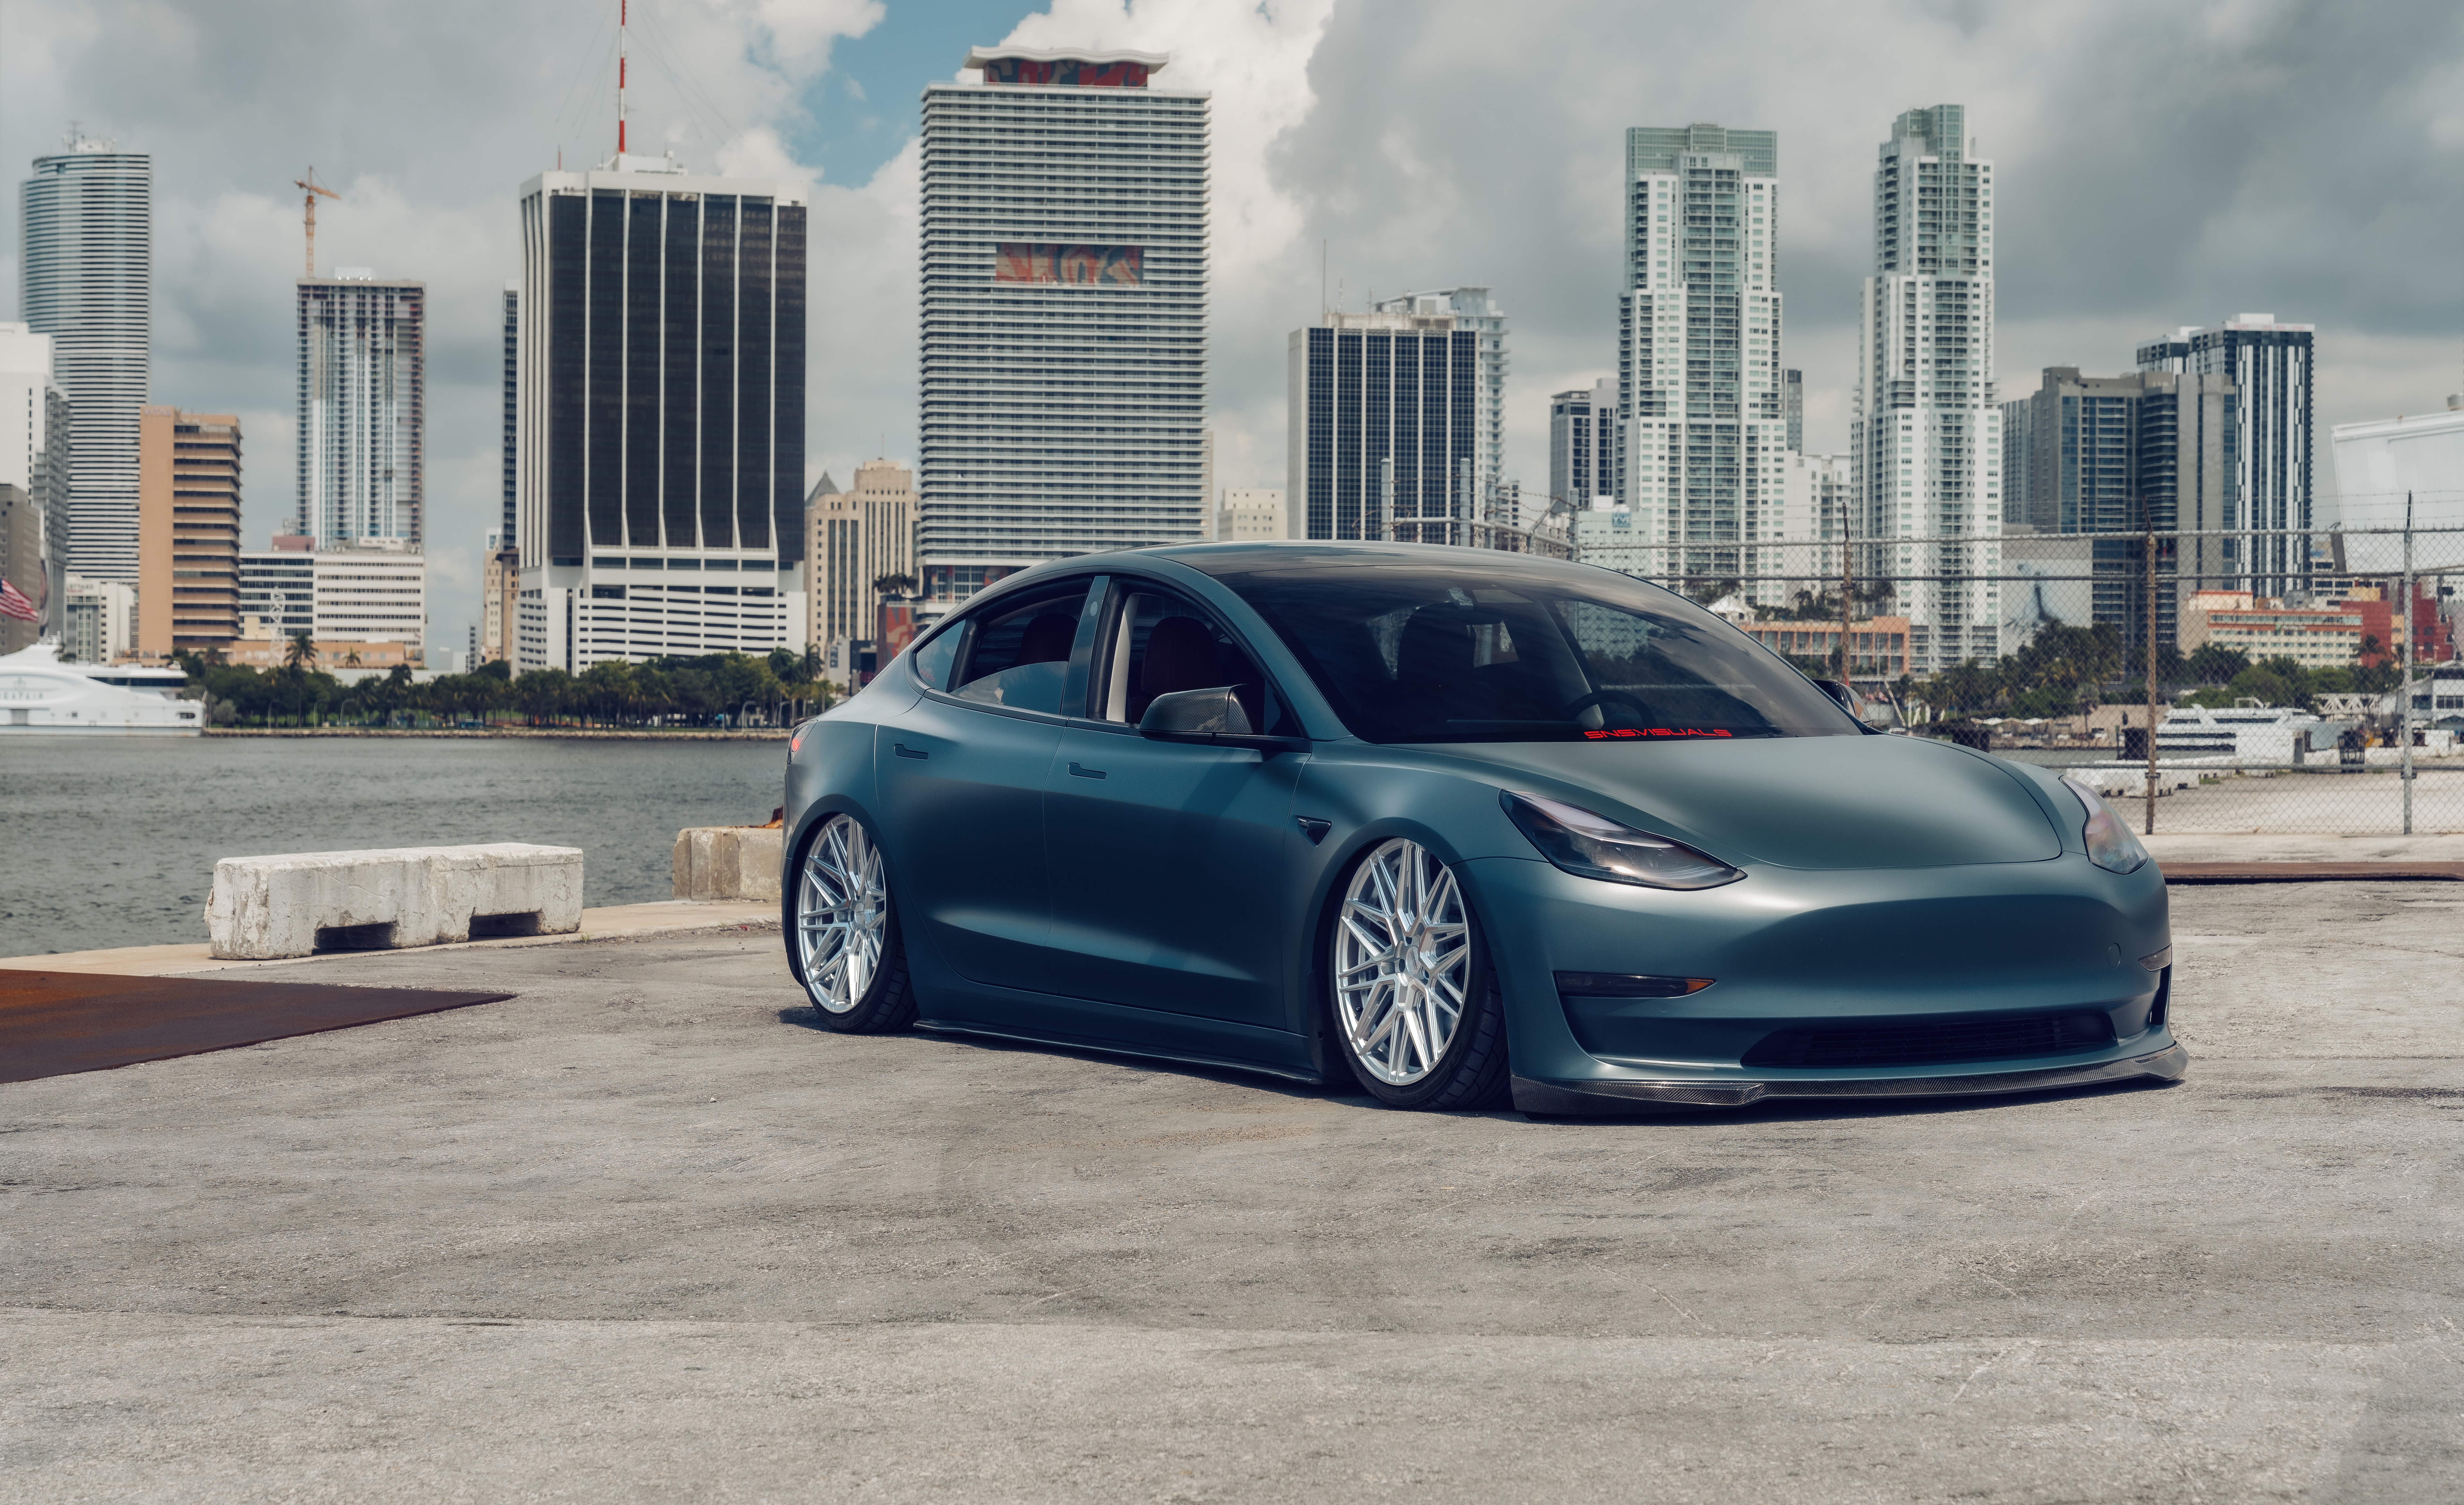 HD wallpaper, 5K, Electric Cars, Tesla Model 3, 8K